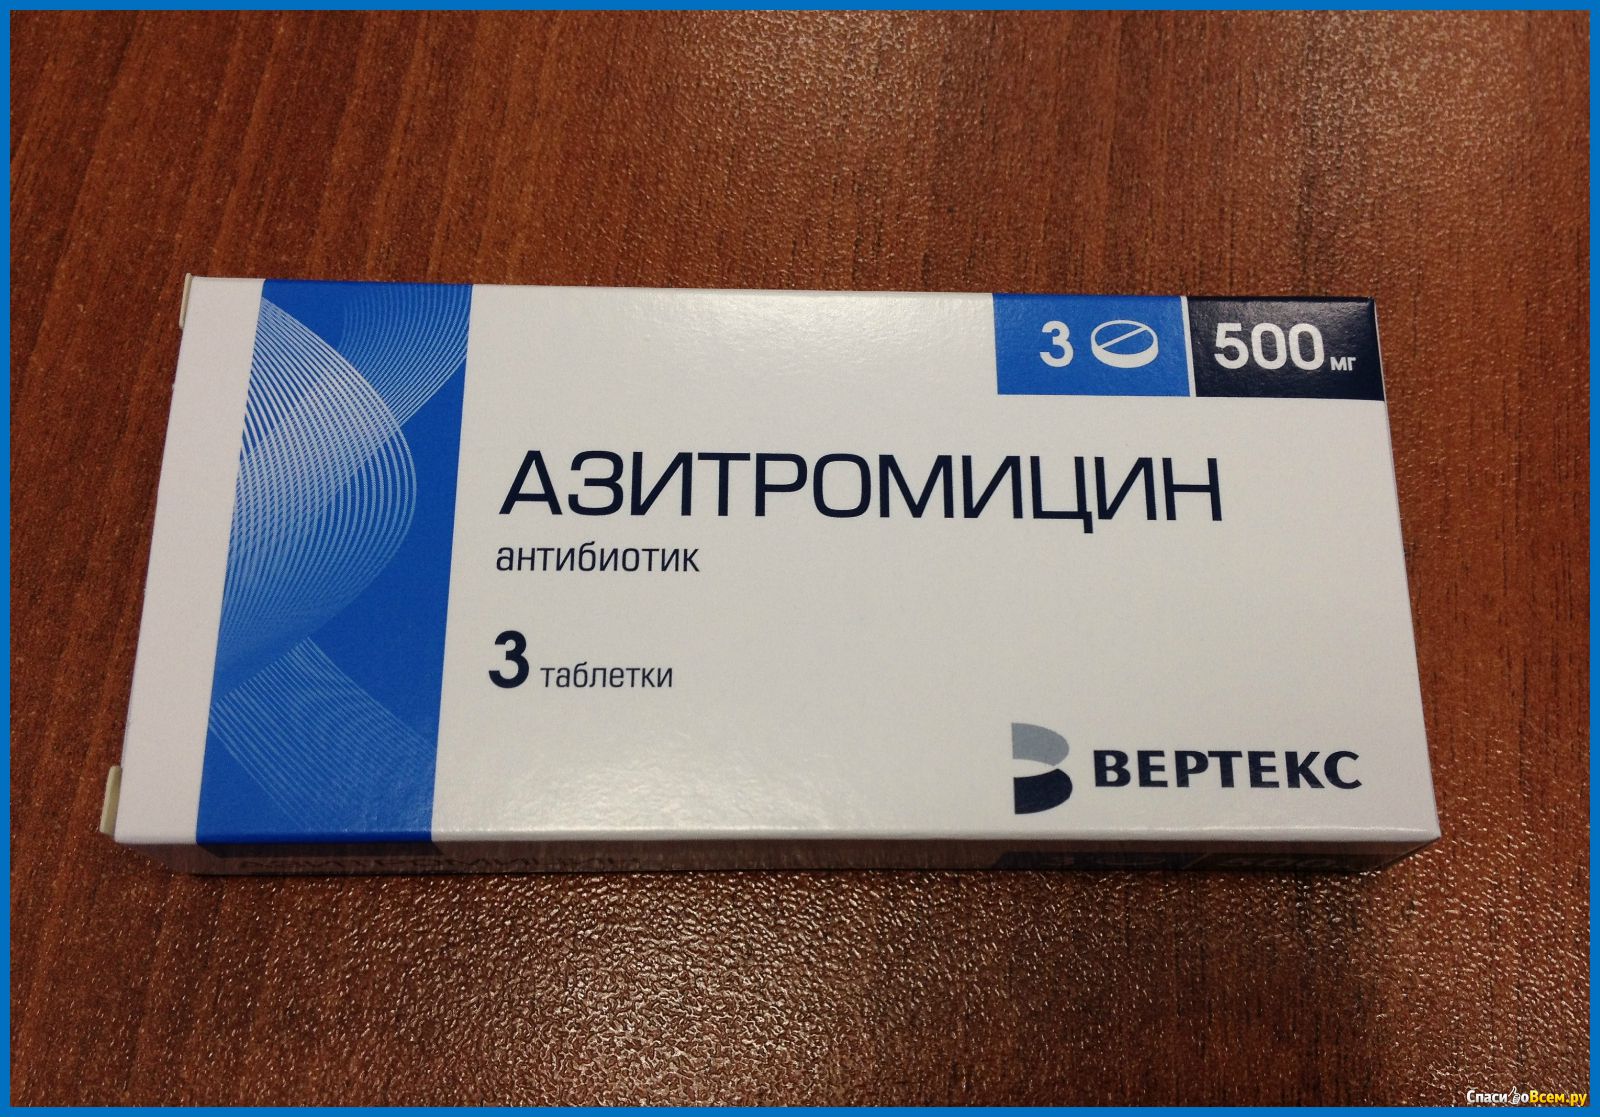 Три антибиотика. Антибиотик Азитромицин 3 таблетки. Азитромицин 500 мг. Антибиотик Азитромицин 500 мг. Азитромицин 500 мг 3 таблетки.